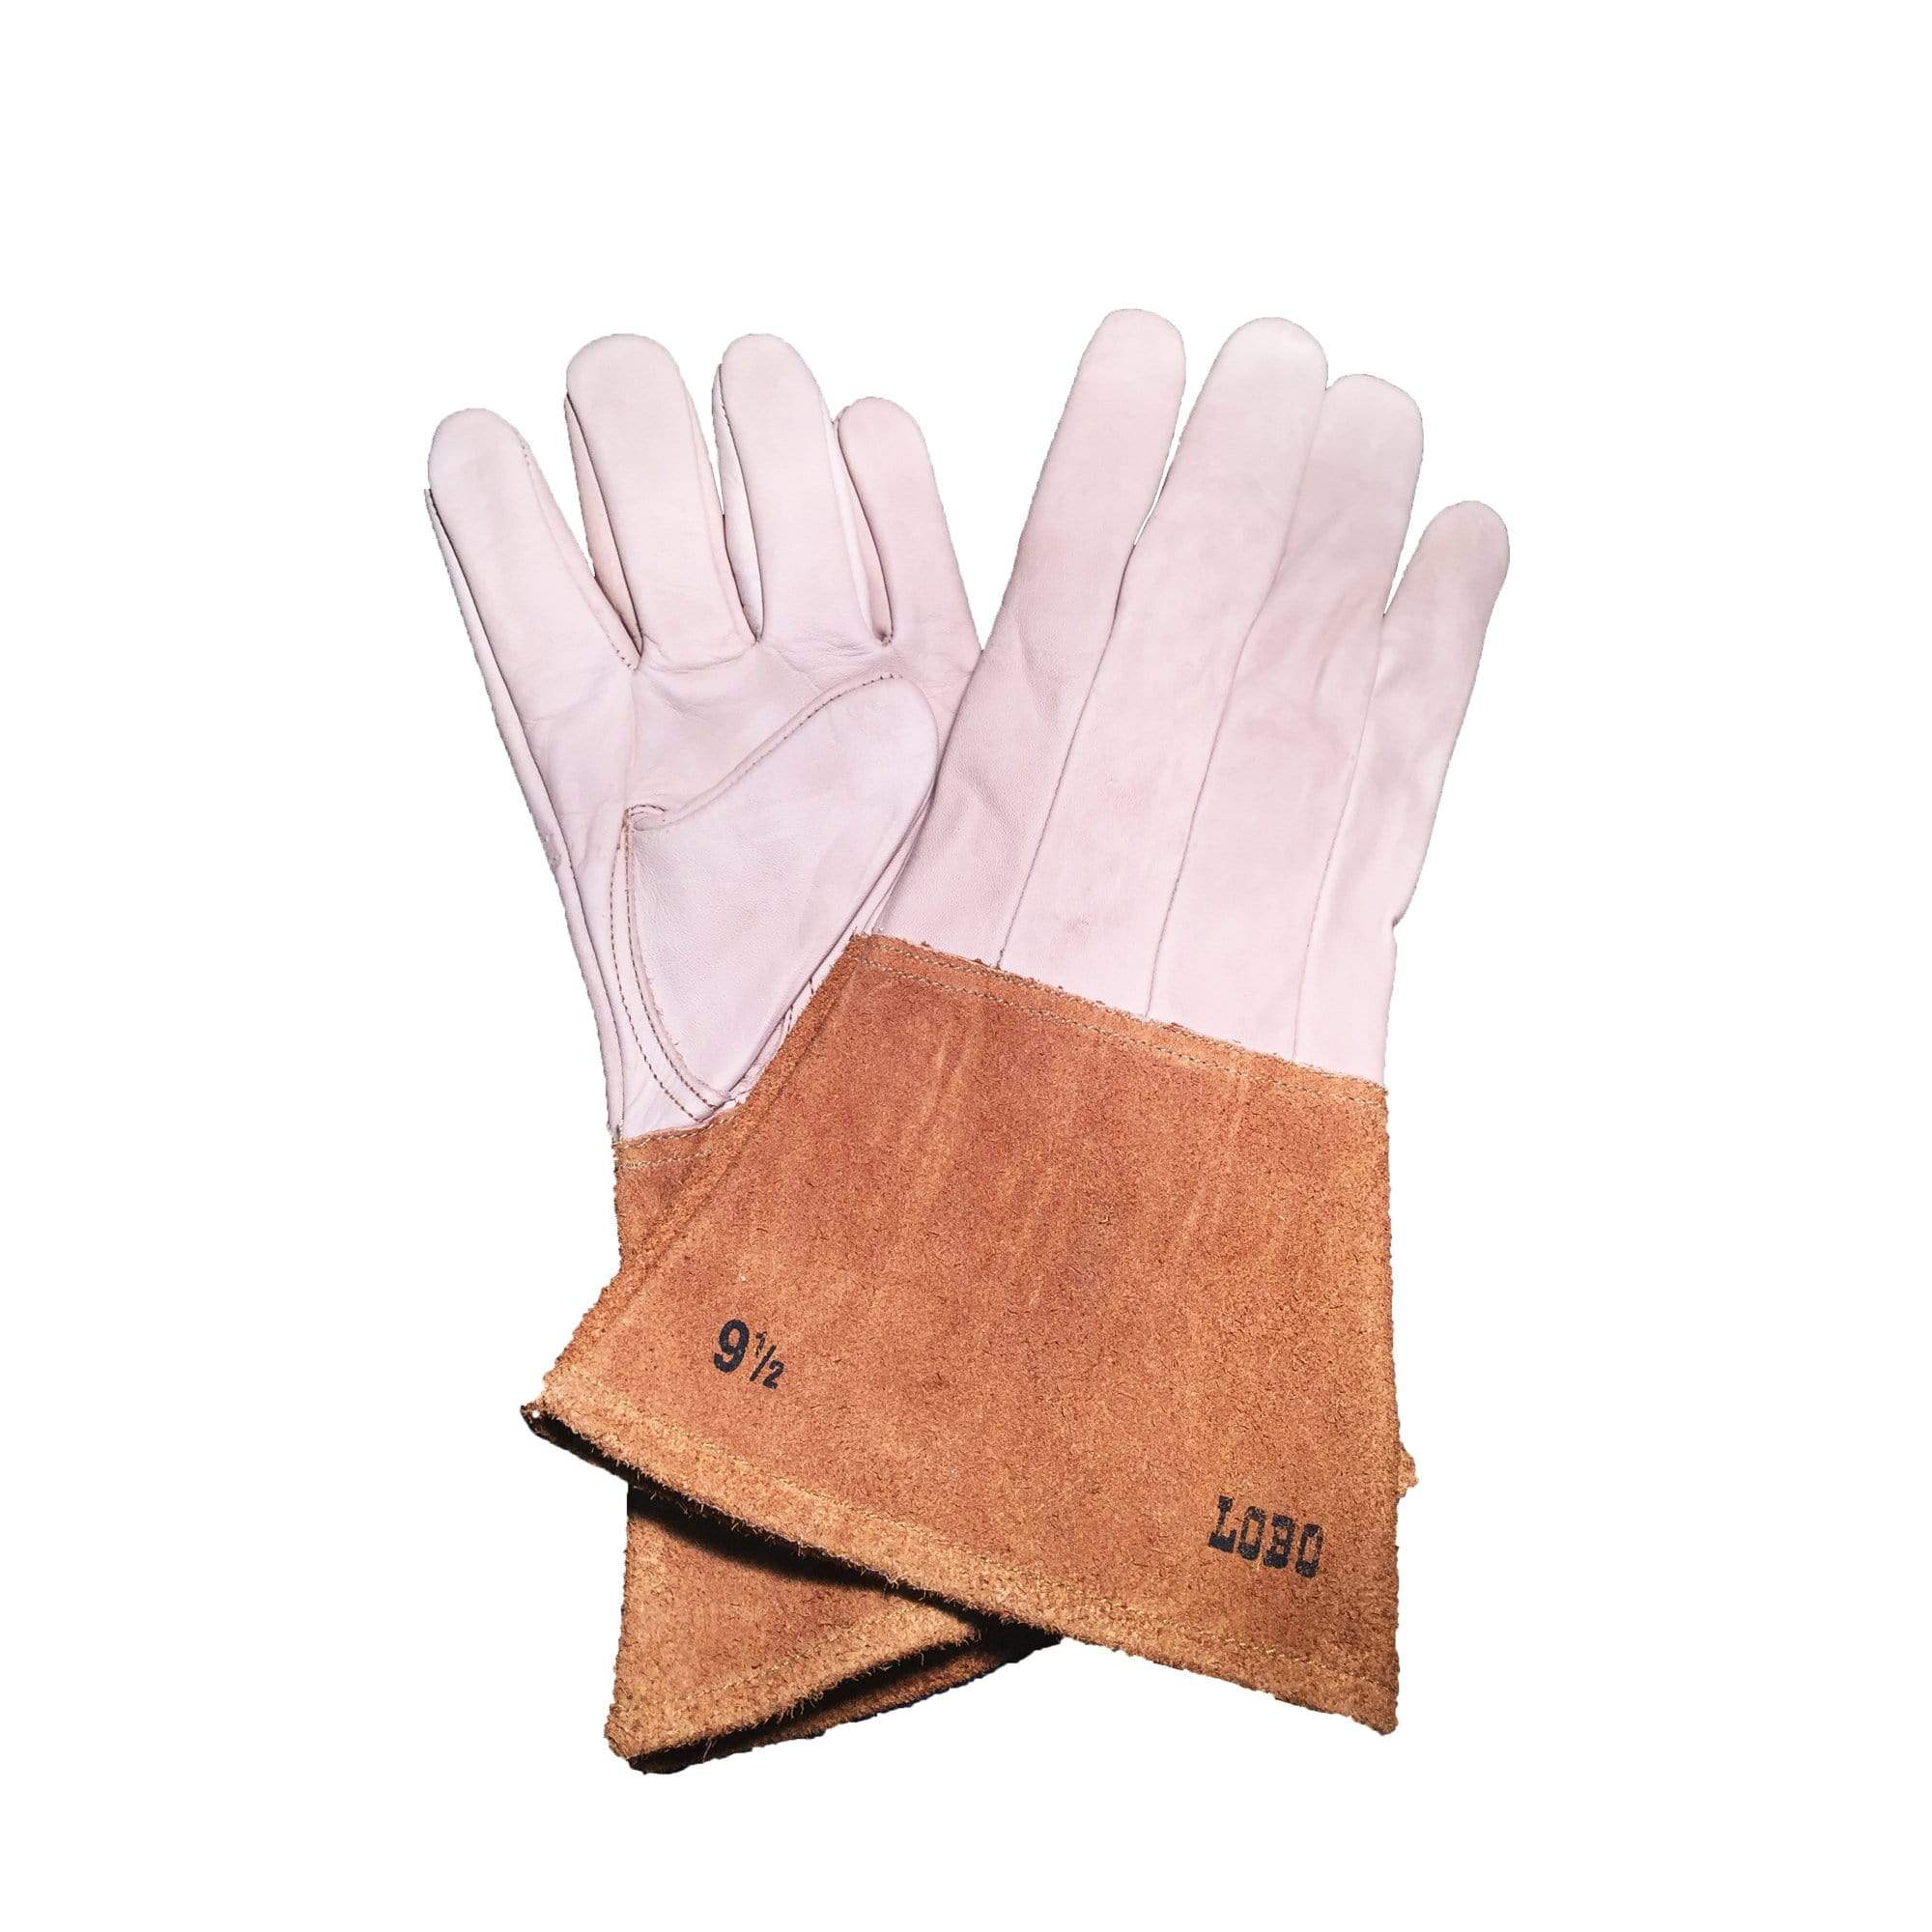 Leather Gloves - Arbor Scientific